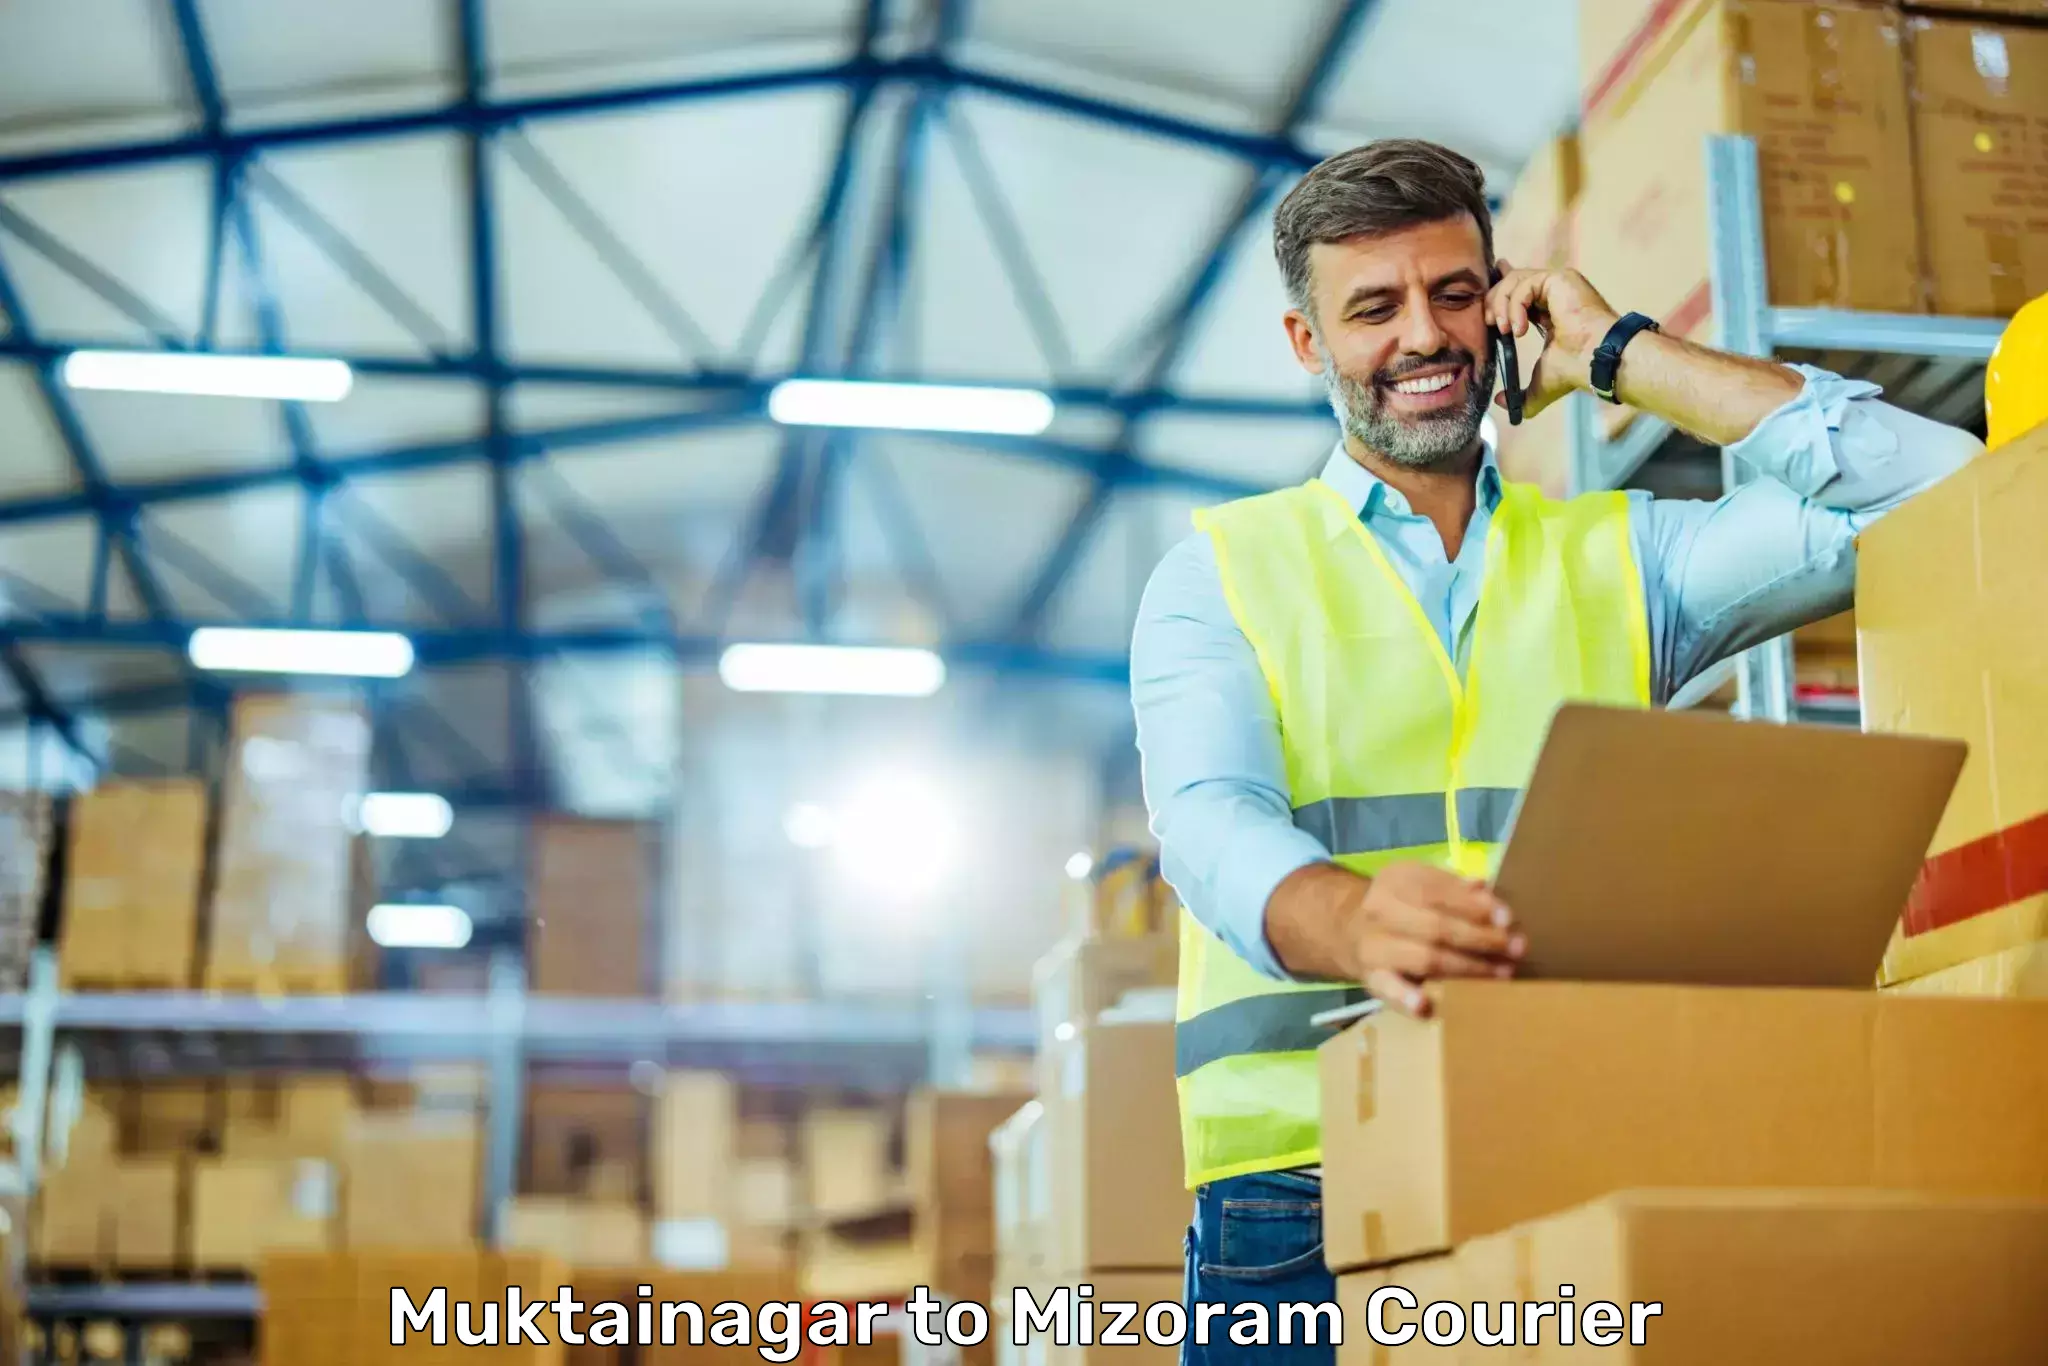 Courier service innovation Muktainagar to Mizoram